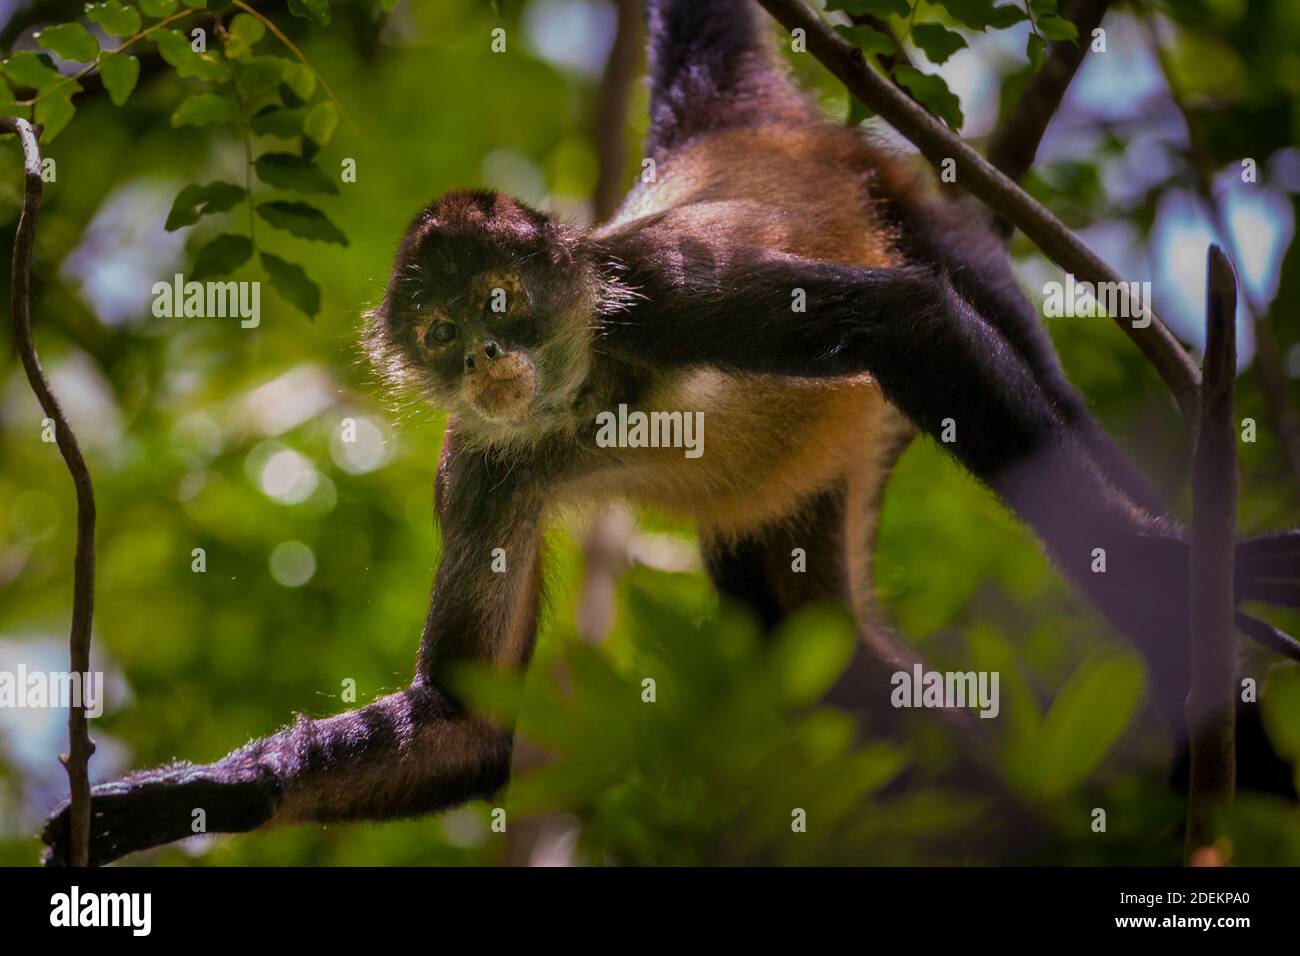 Panama fauna selvatica con Azuero Spider Monkey, Ateles geoffroyi azuerensis, all'interno della foresta pluviale del parco nazionale Cerro Hoya, provincia di Veraguas, Panama. Foto Stock